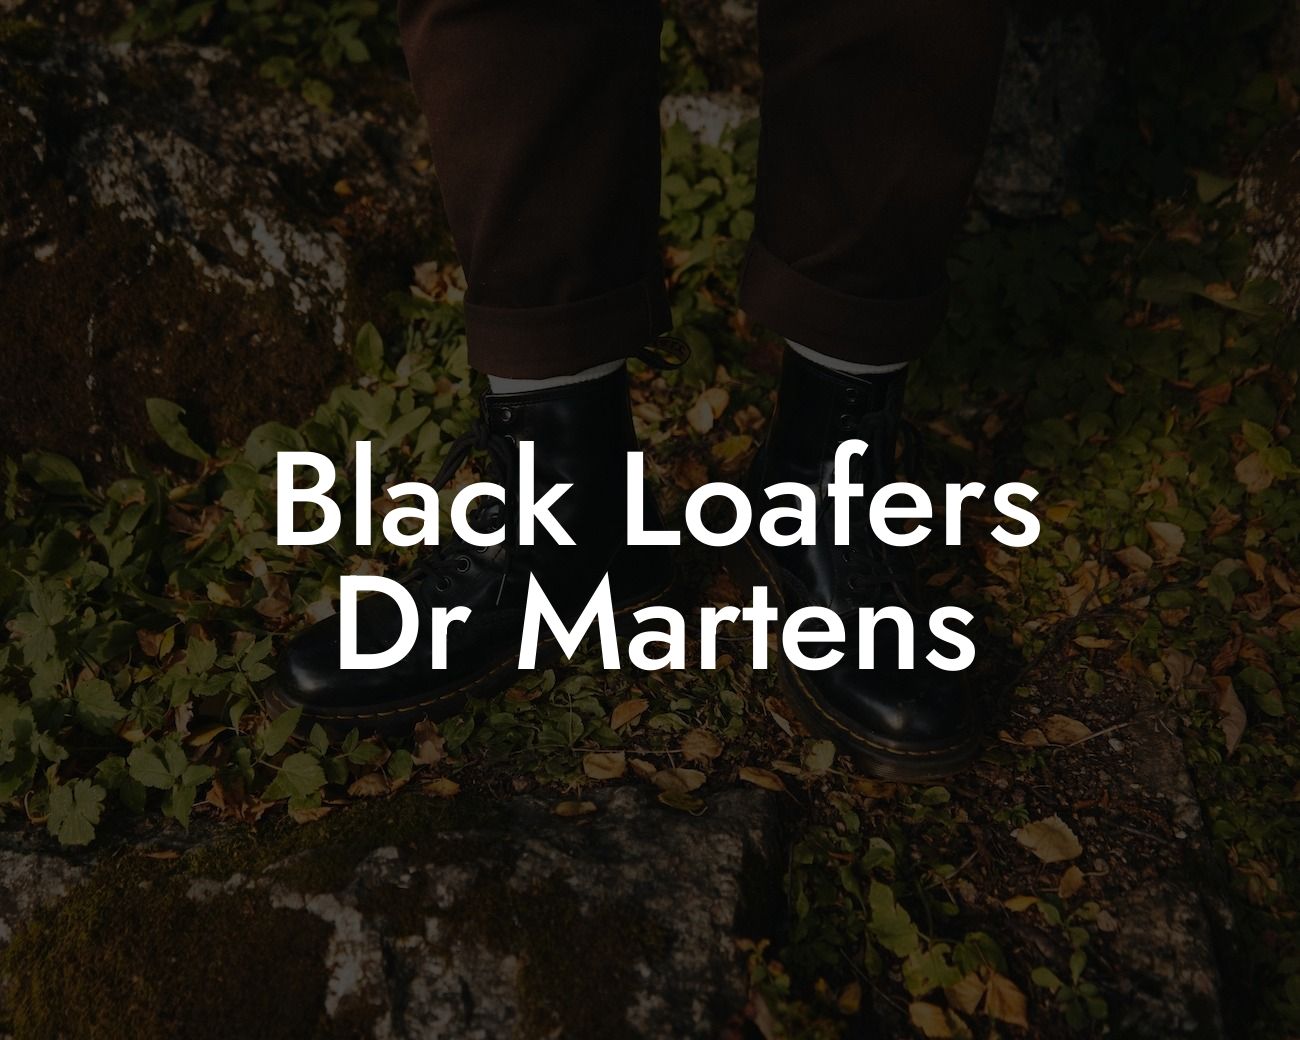 Black Loafers Dr Martens